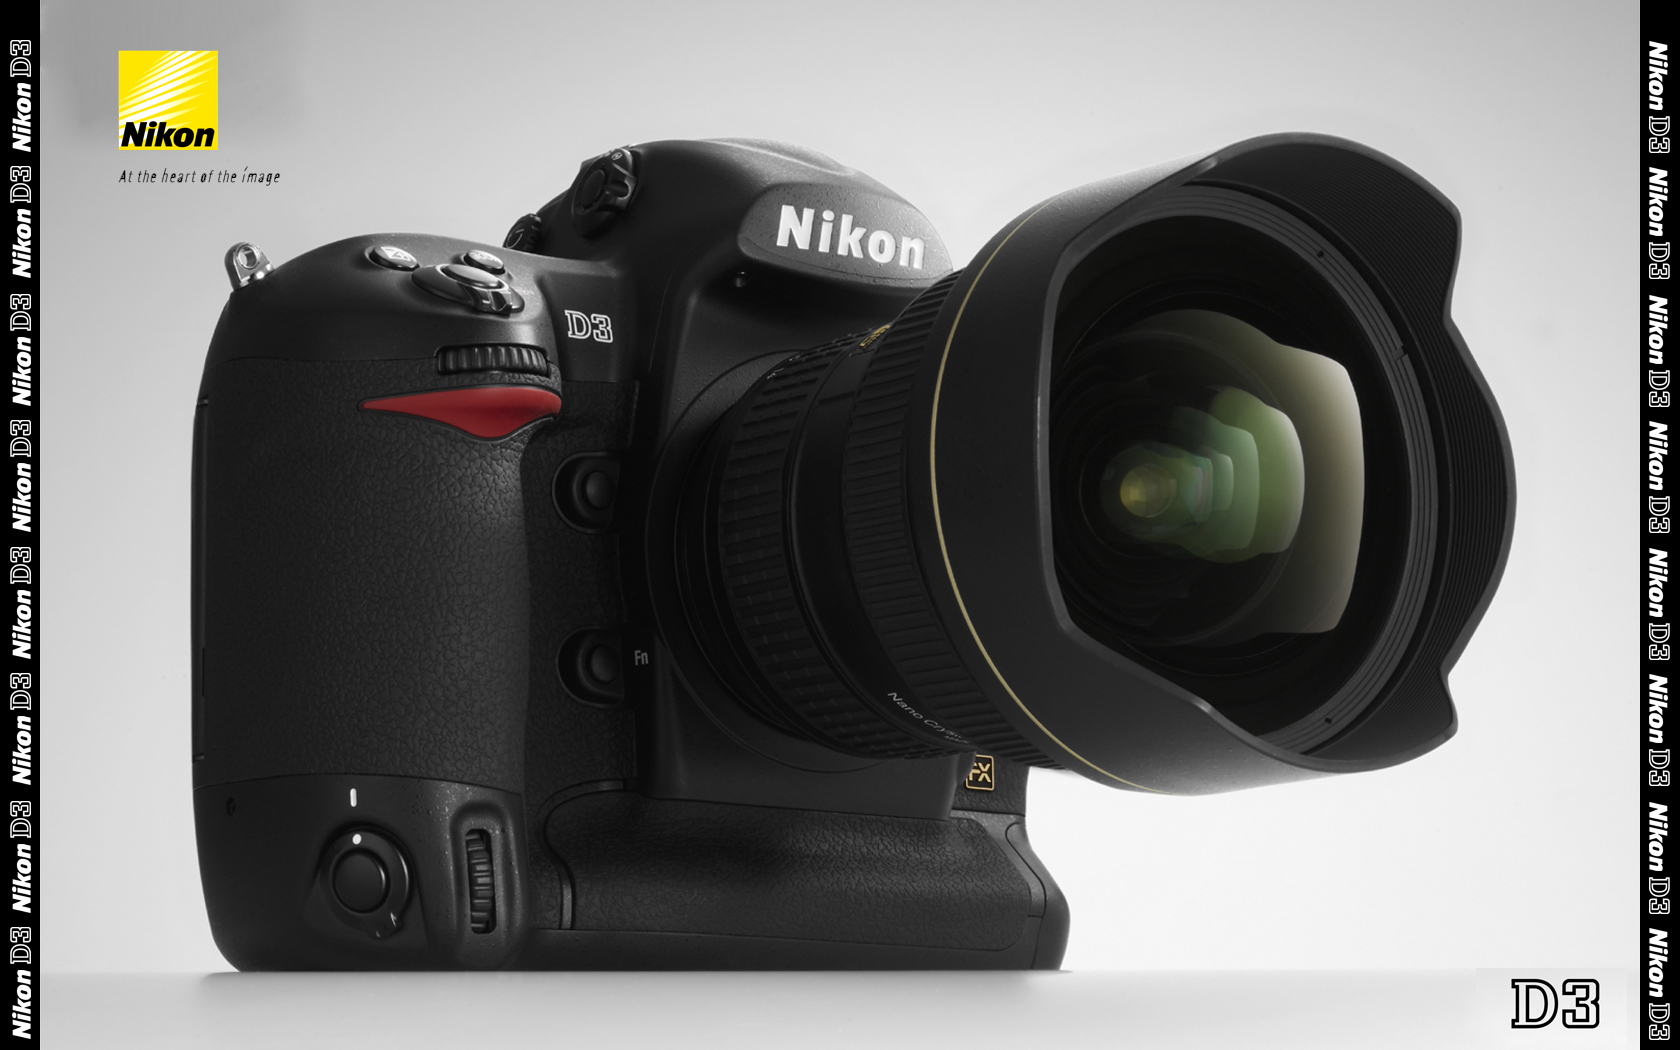 Nikon D3 Digital Slr Camera Wallpaper - Nikon D3 - HD Wallpaper 